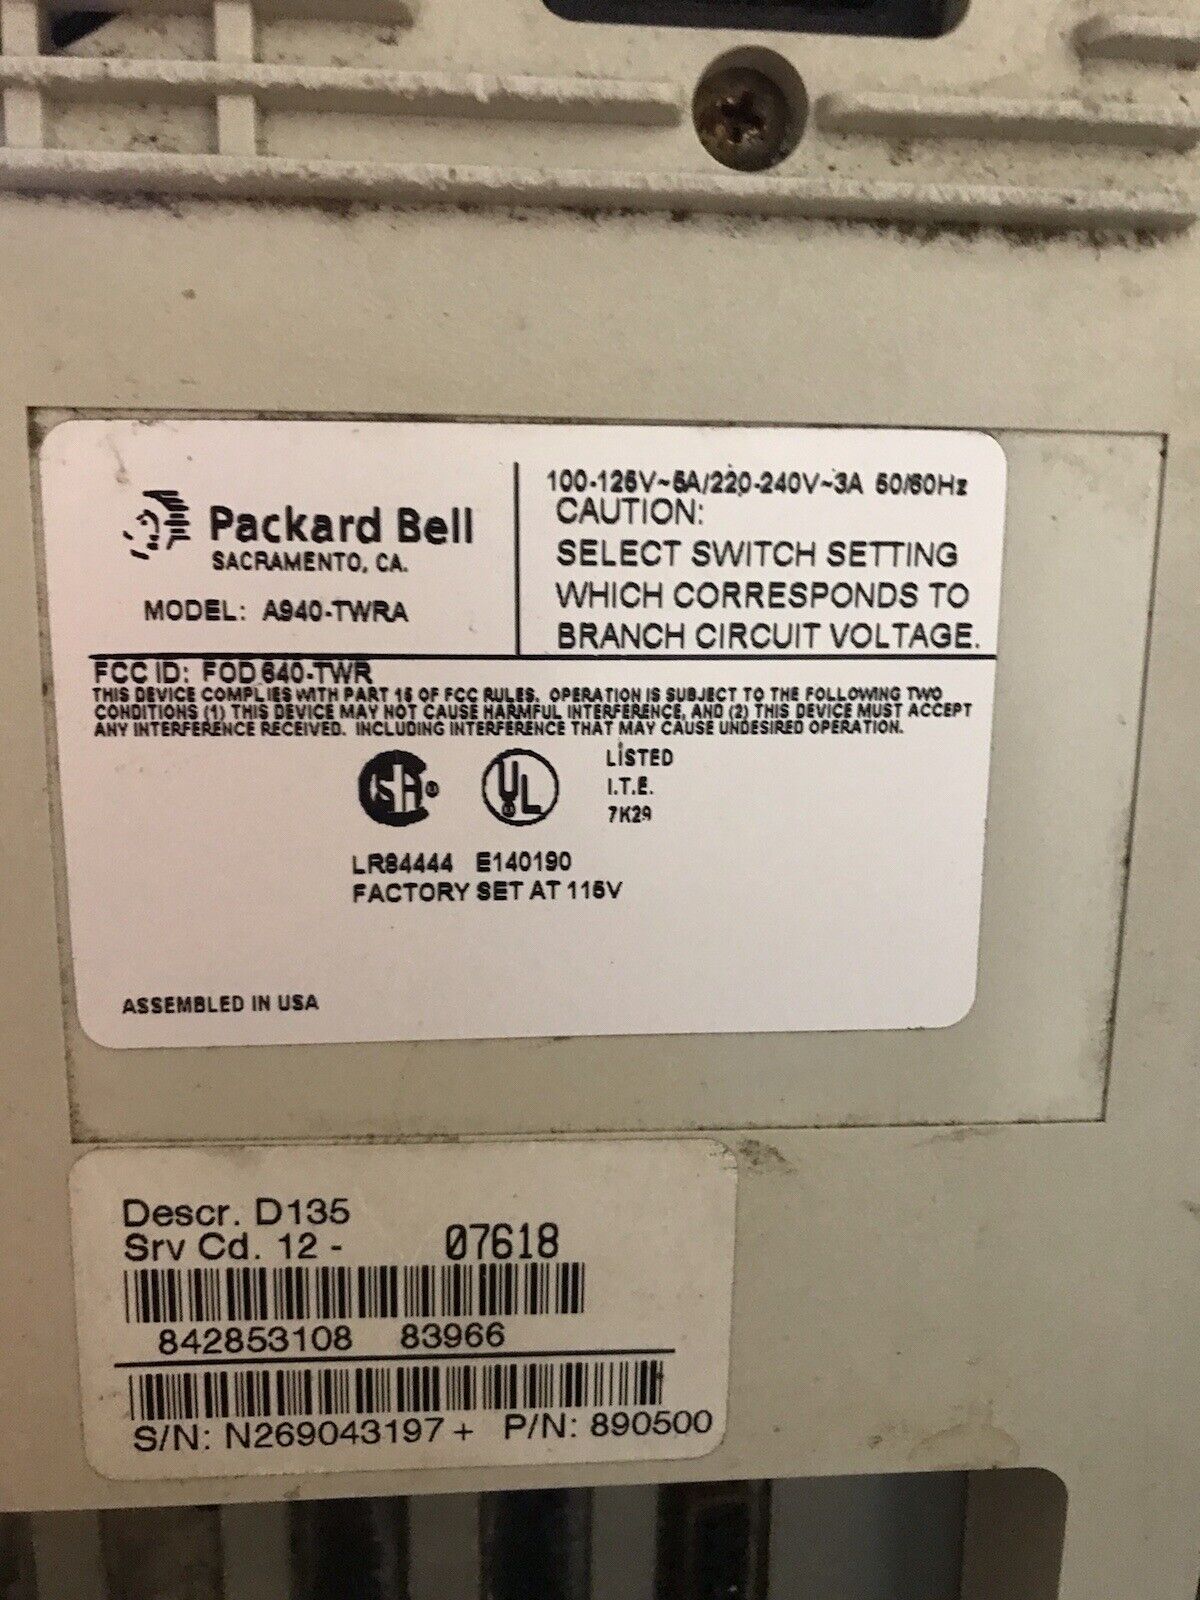 packard bell computer A940-TWRA